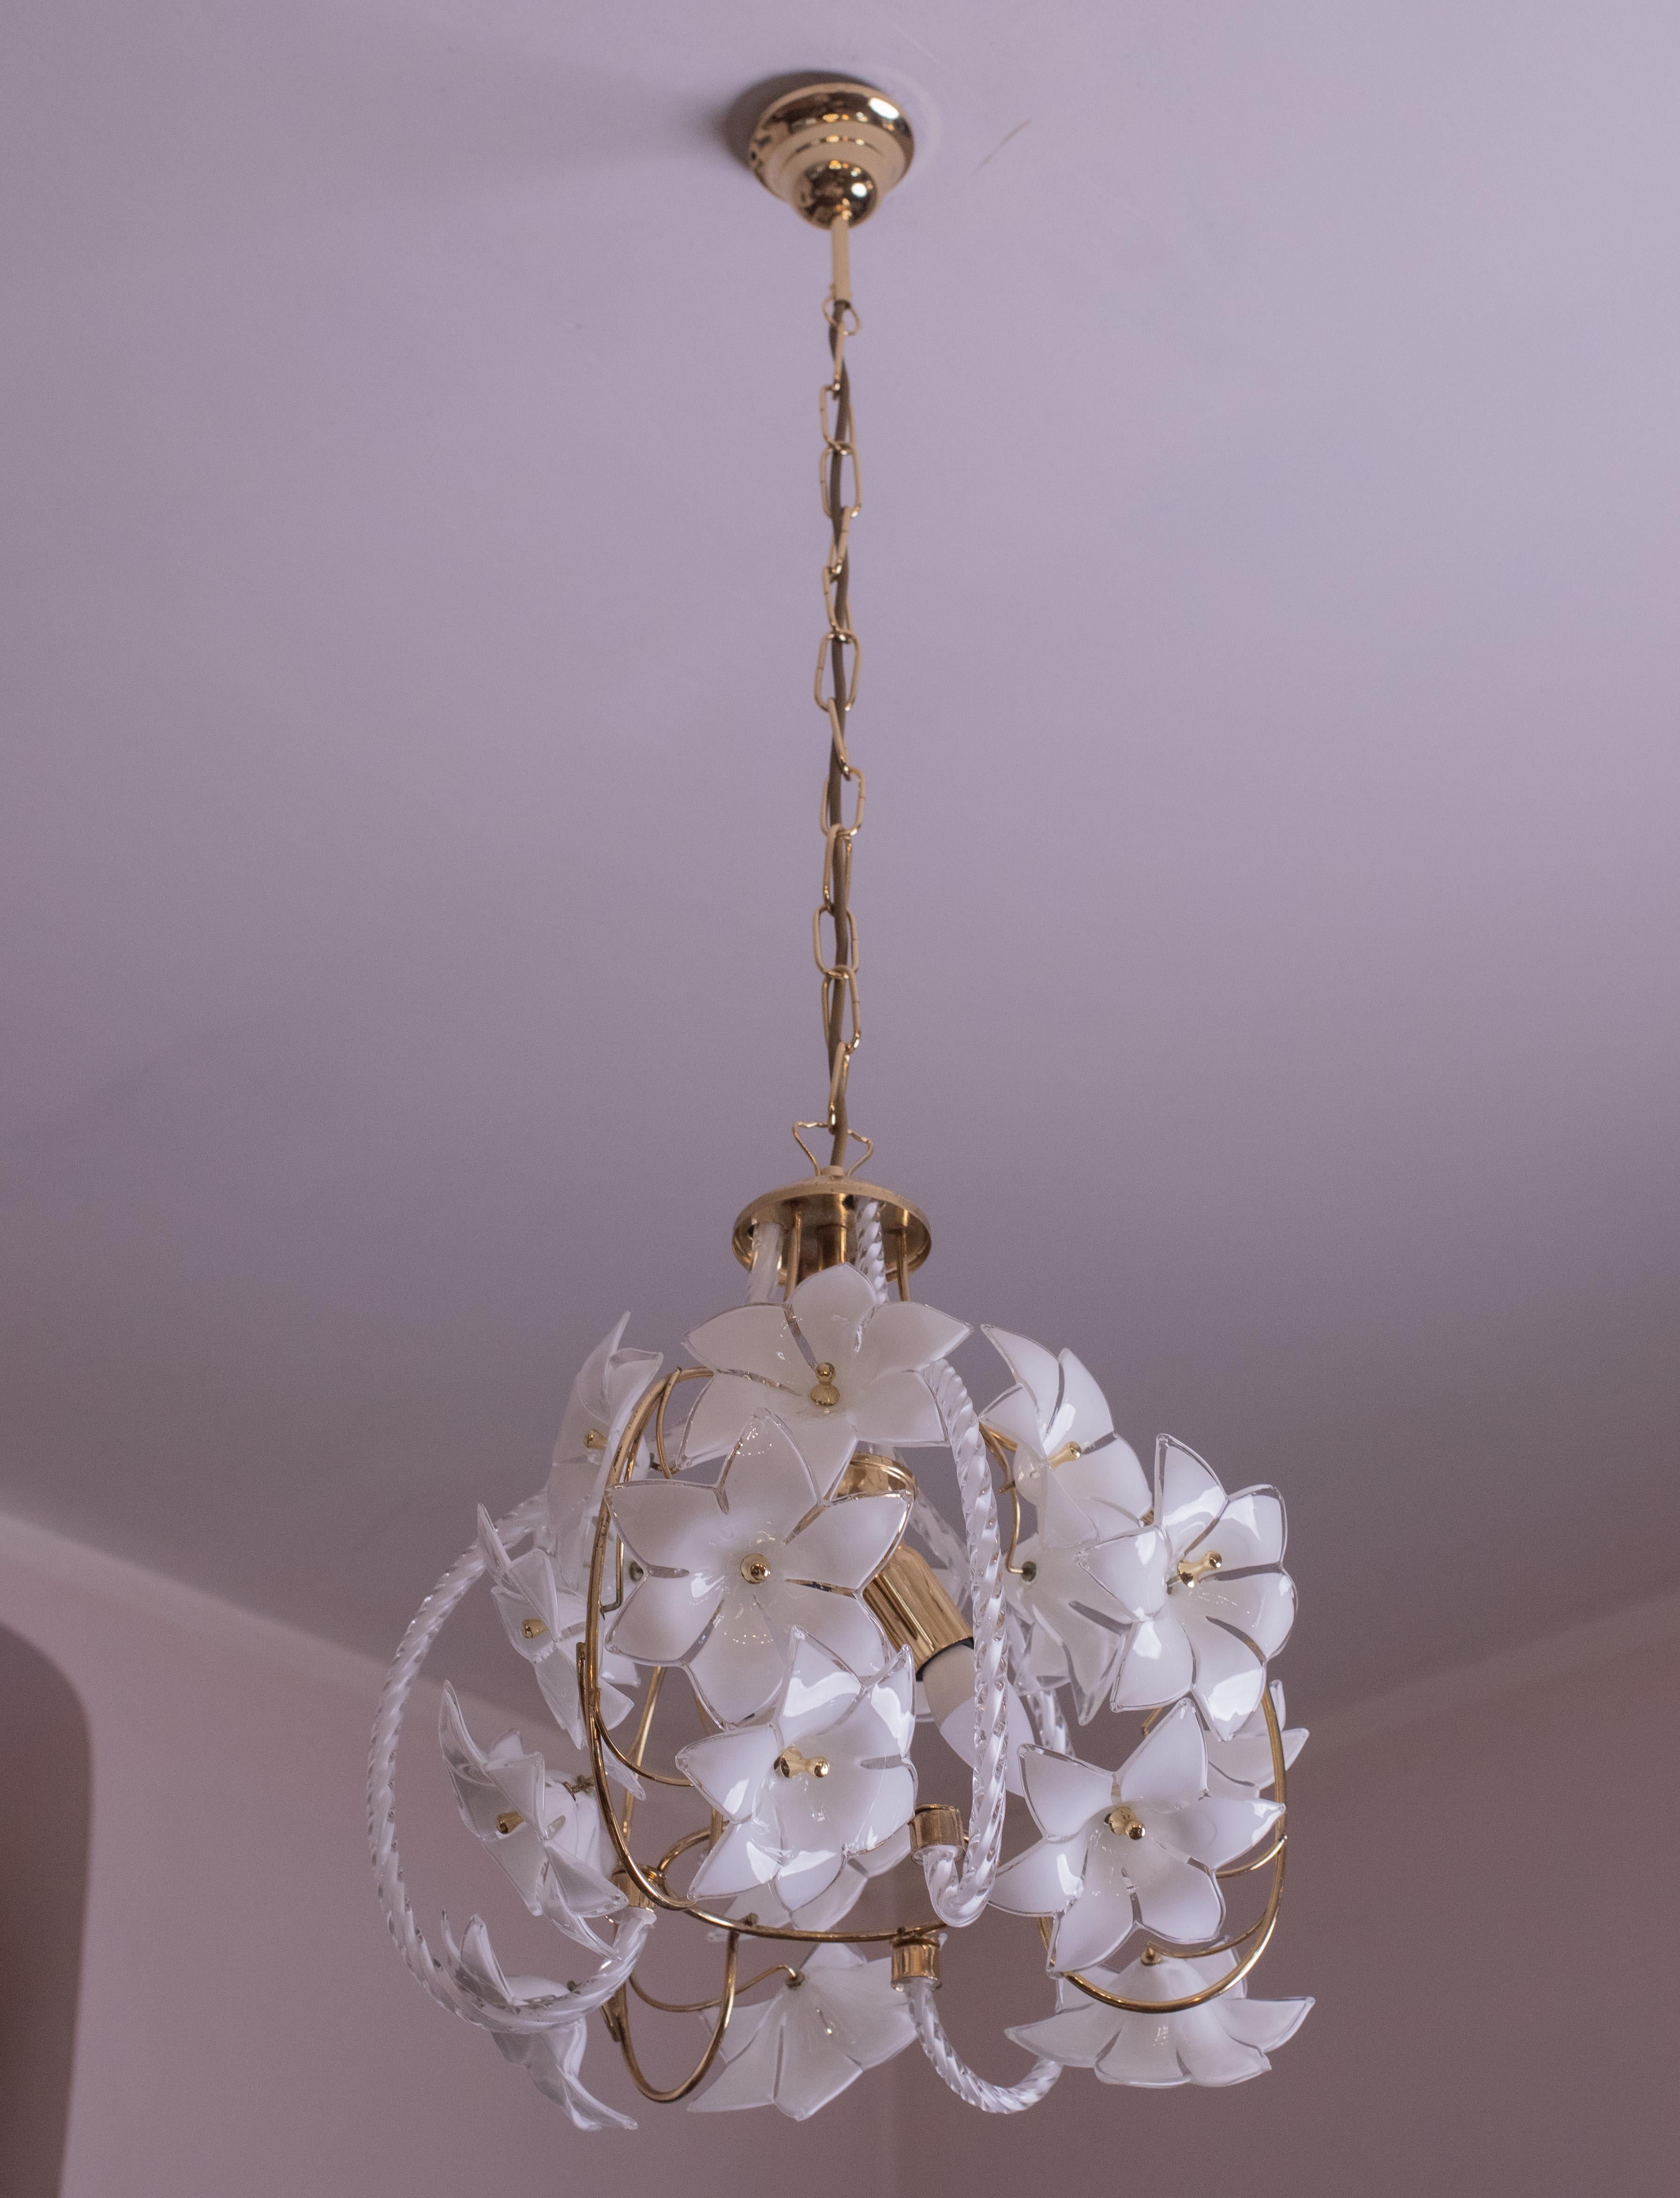 Murano Spherical Chandelier Full of White Flowers, 1980s For Sale 4